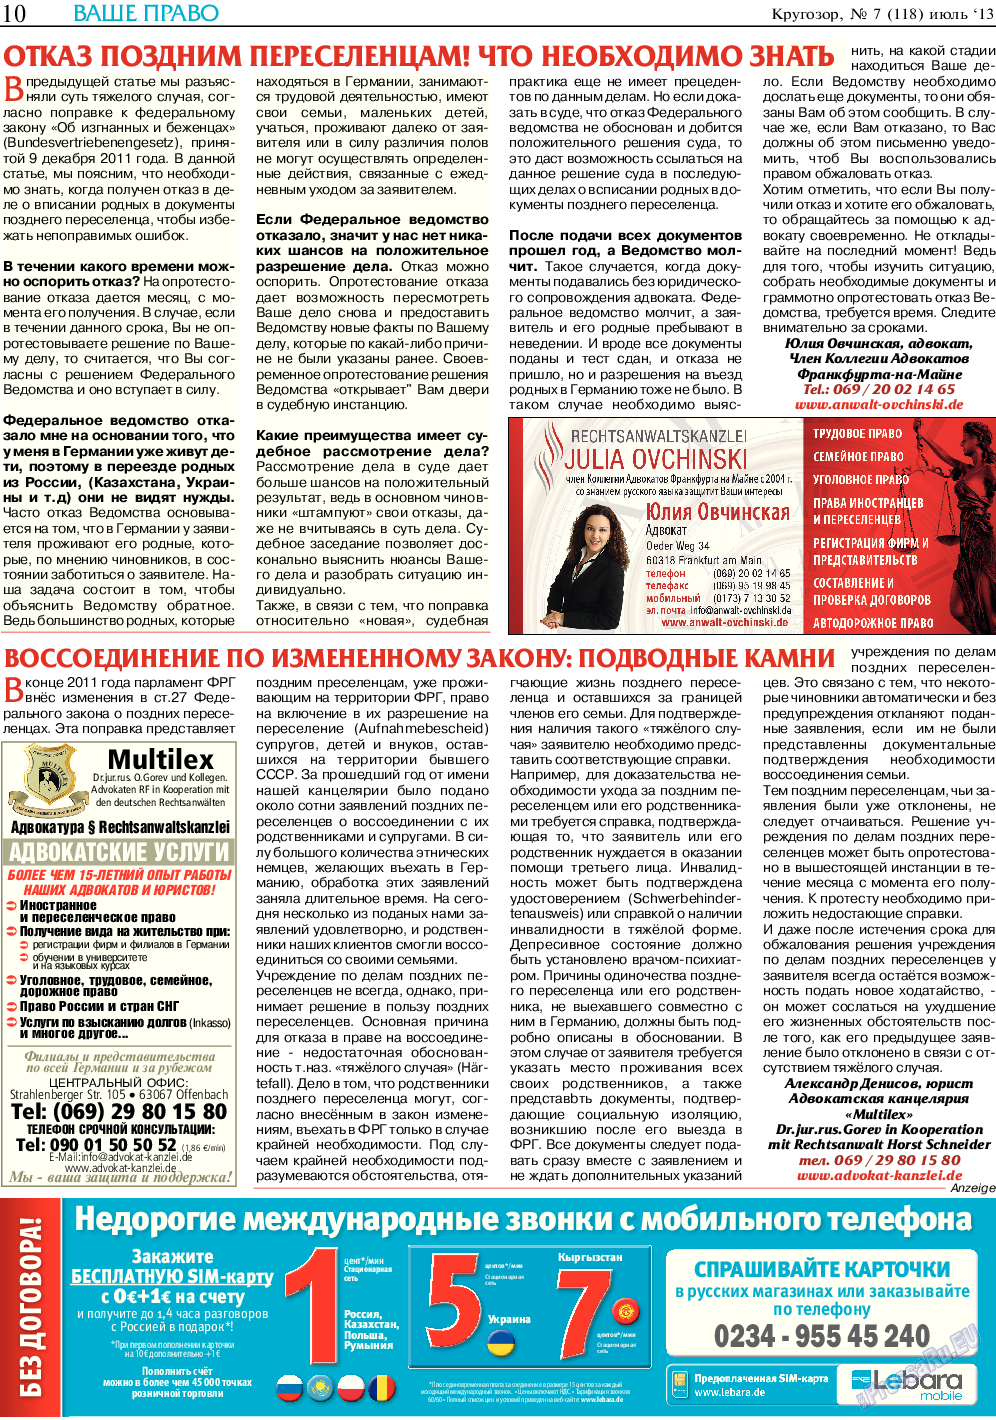 Кругозор, газета. 2013 №7 стр.10